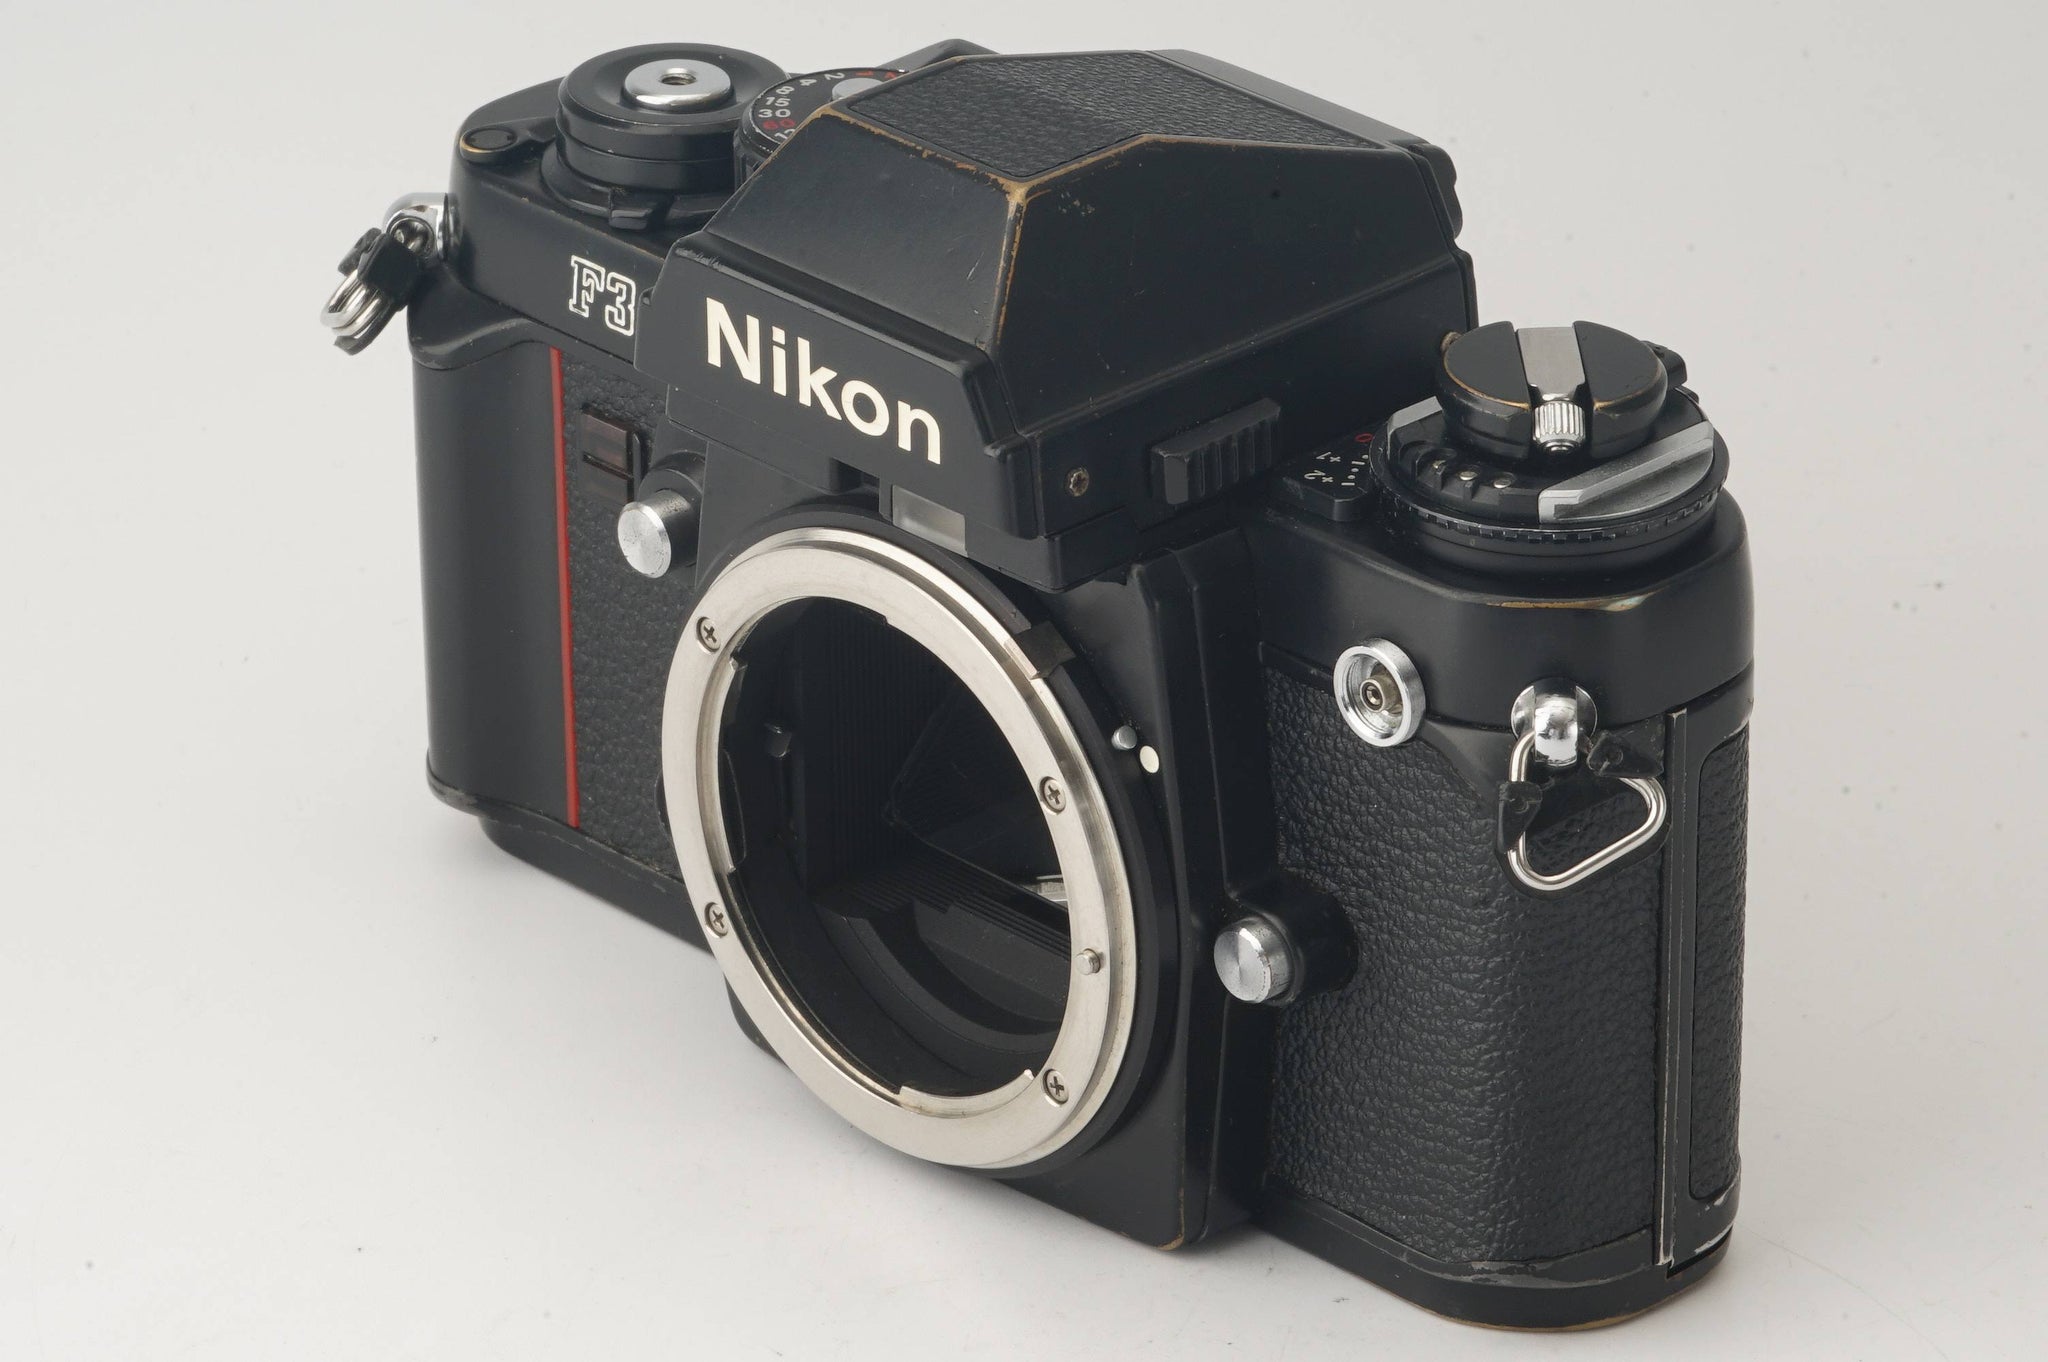 【名機】ニコン Nikon F3 アイレベル 《ロングセラー機》